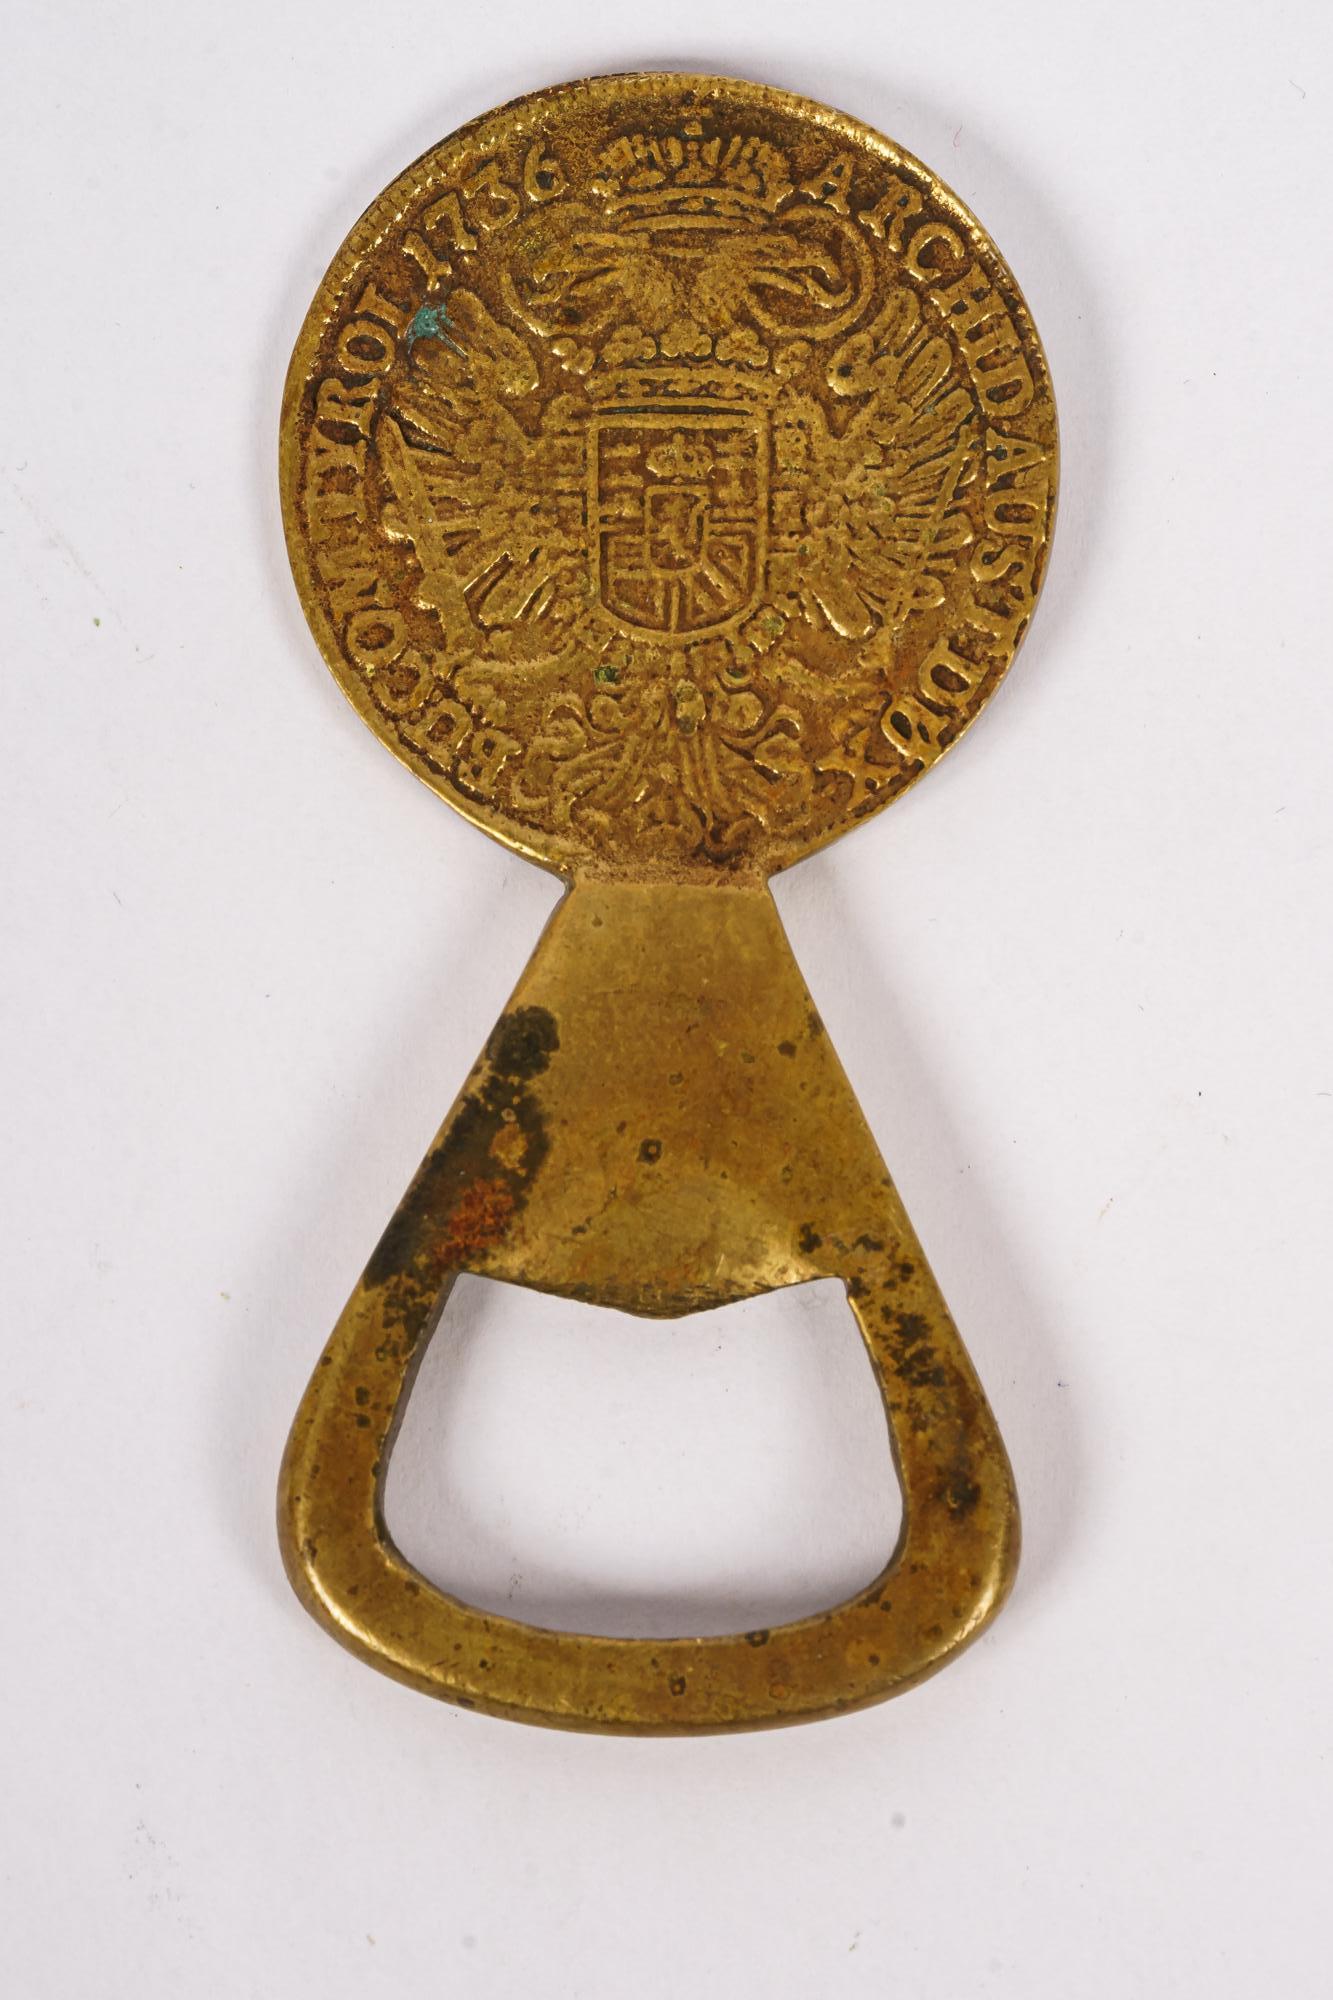 Auböck brass Coin bottle opener, around 1950s
Original condition.